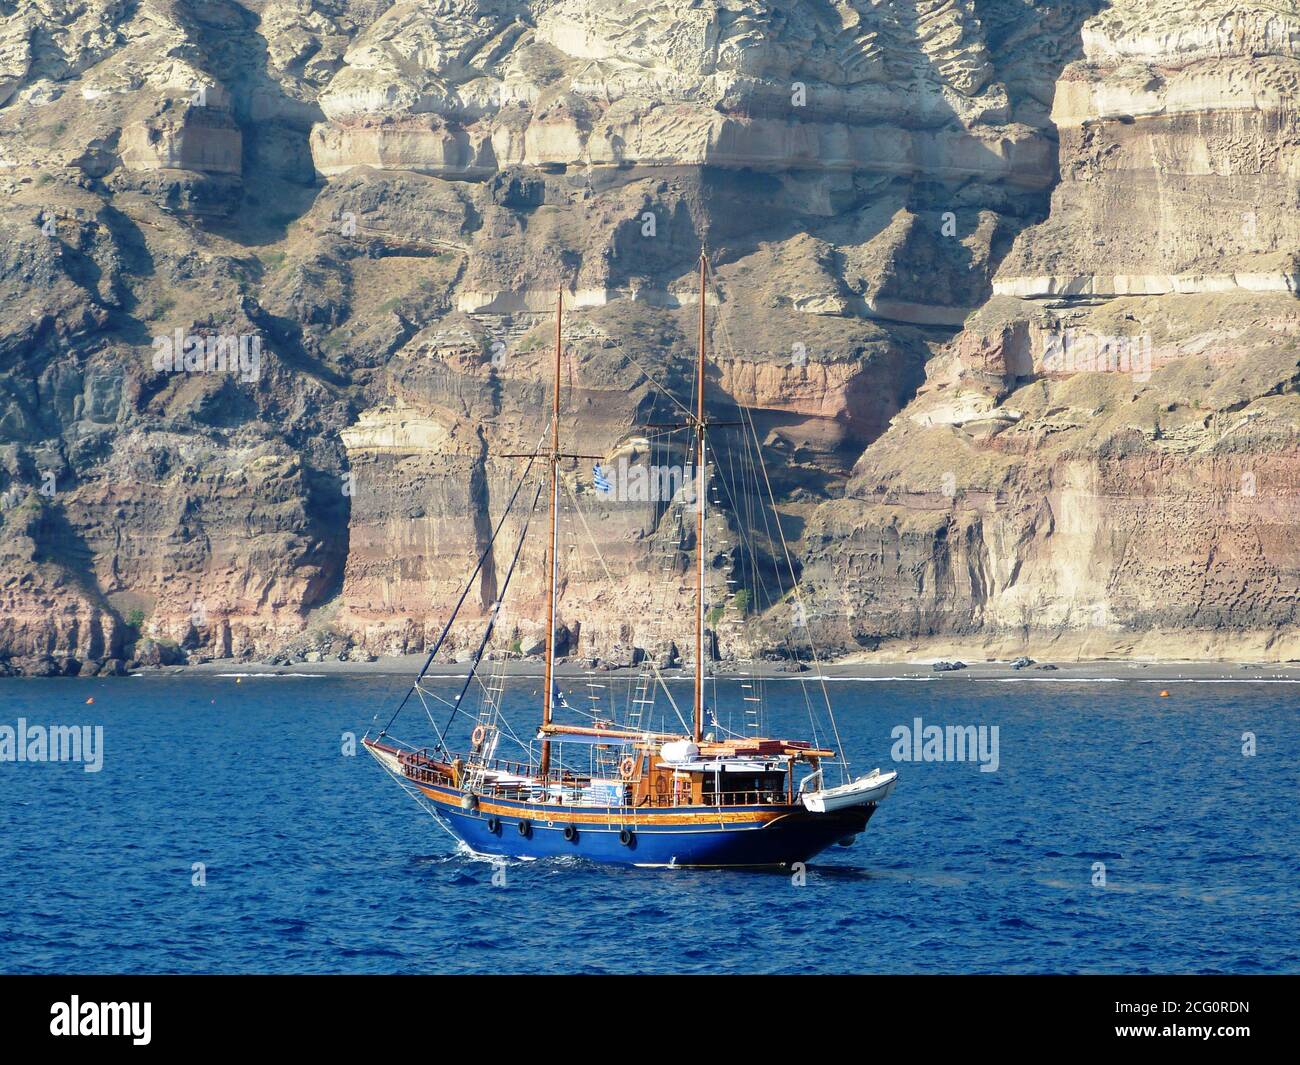 Romantic yacht in the Mediterranean sea near Crete island, Greece. Sail vessel. Wooden ship. Boat trip. Stock Photo